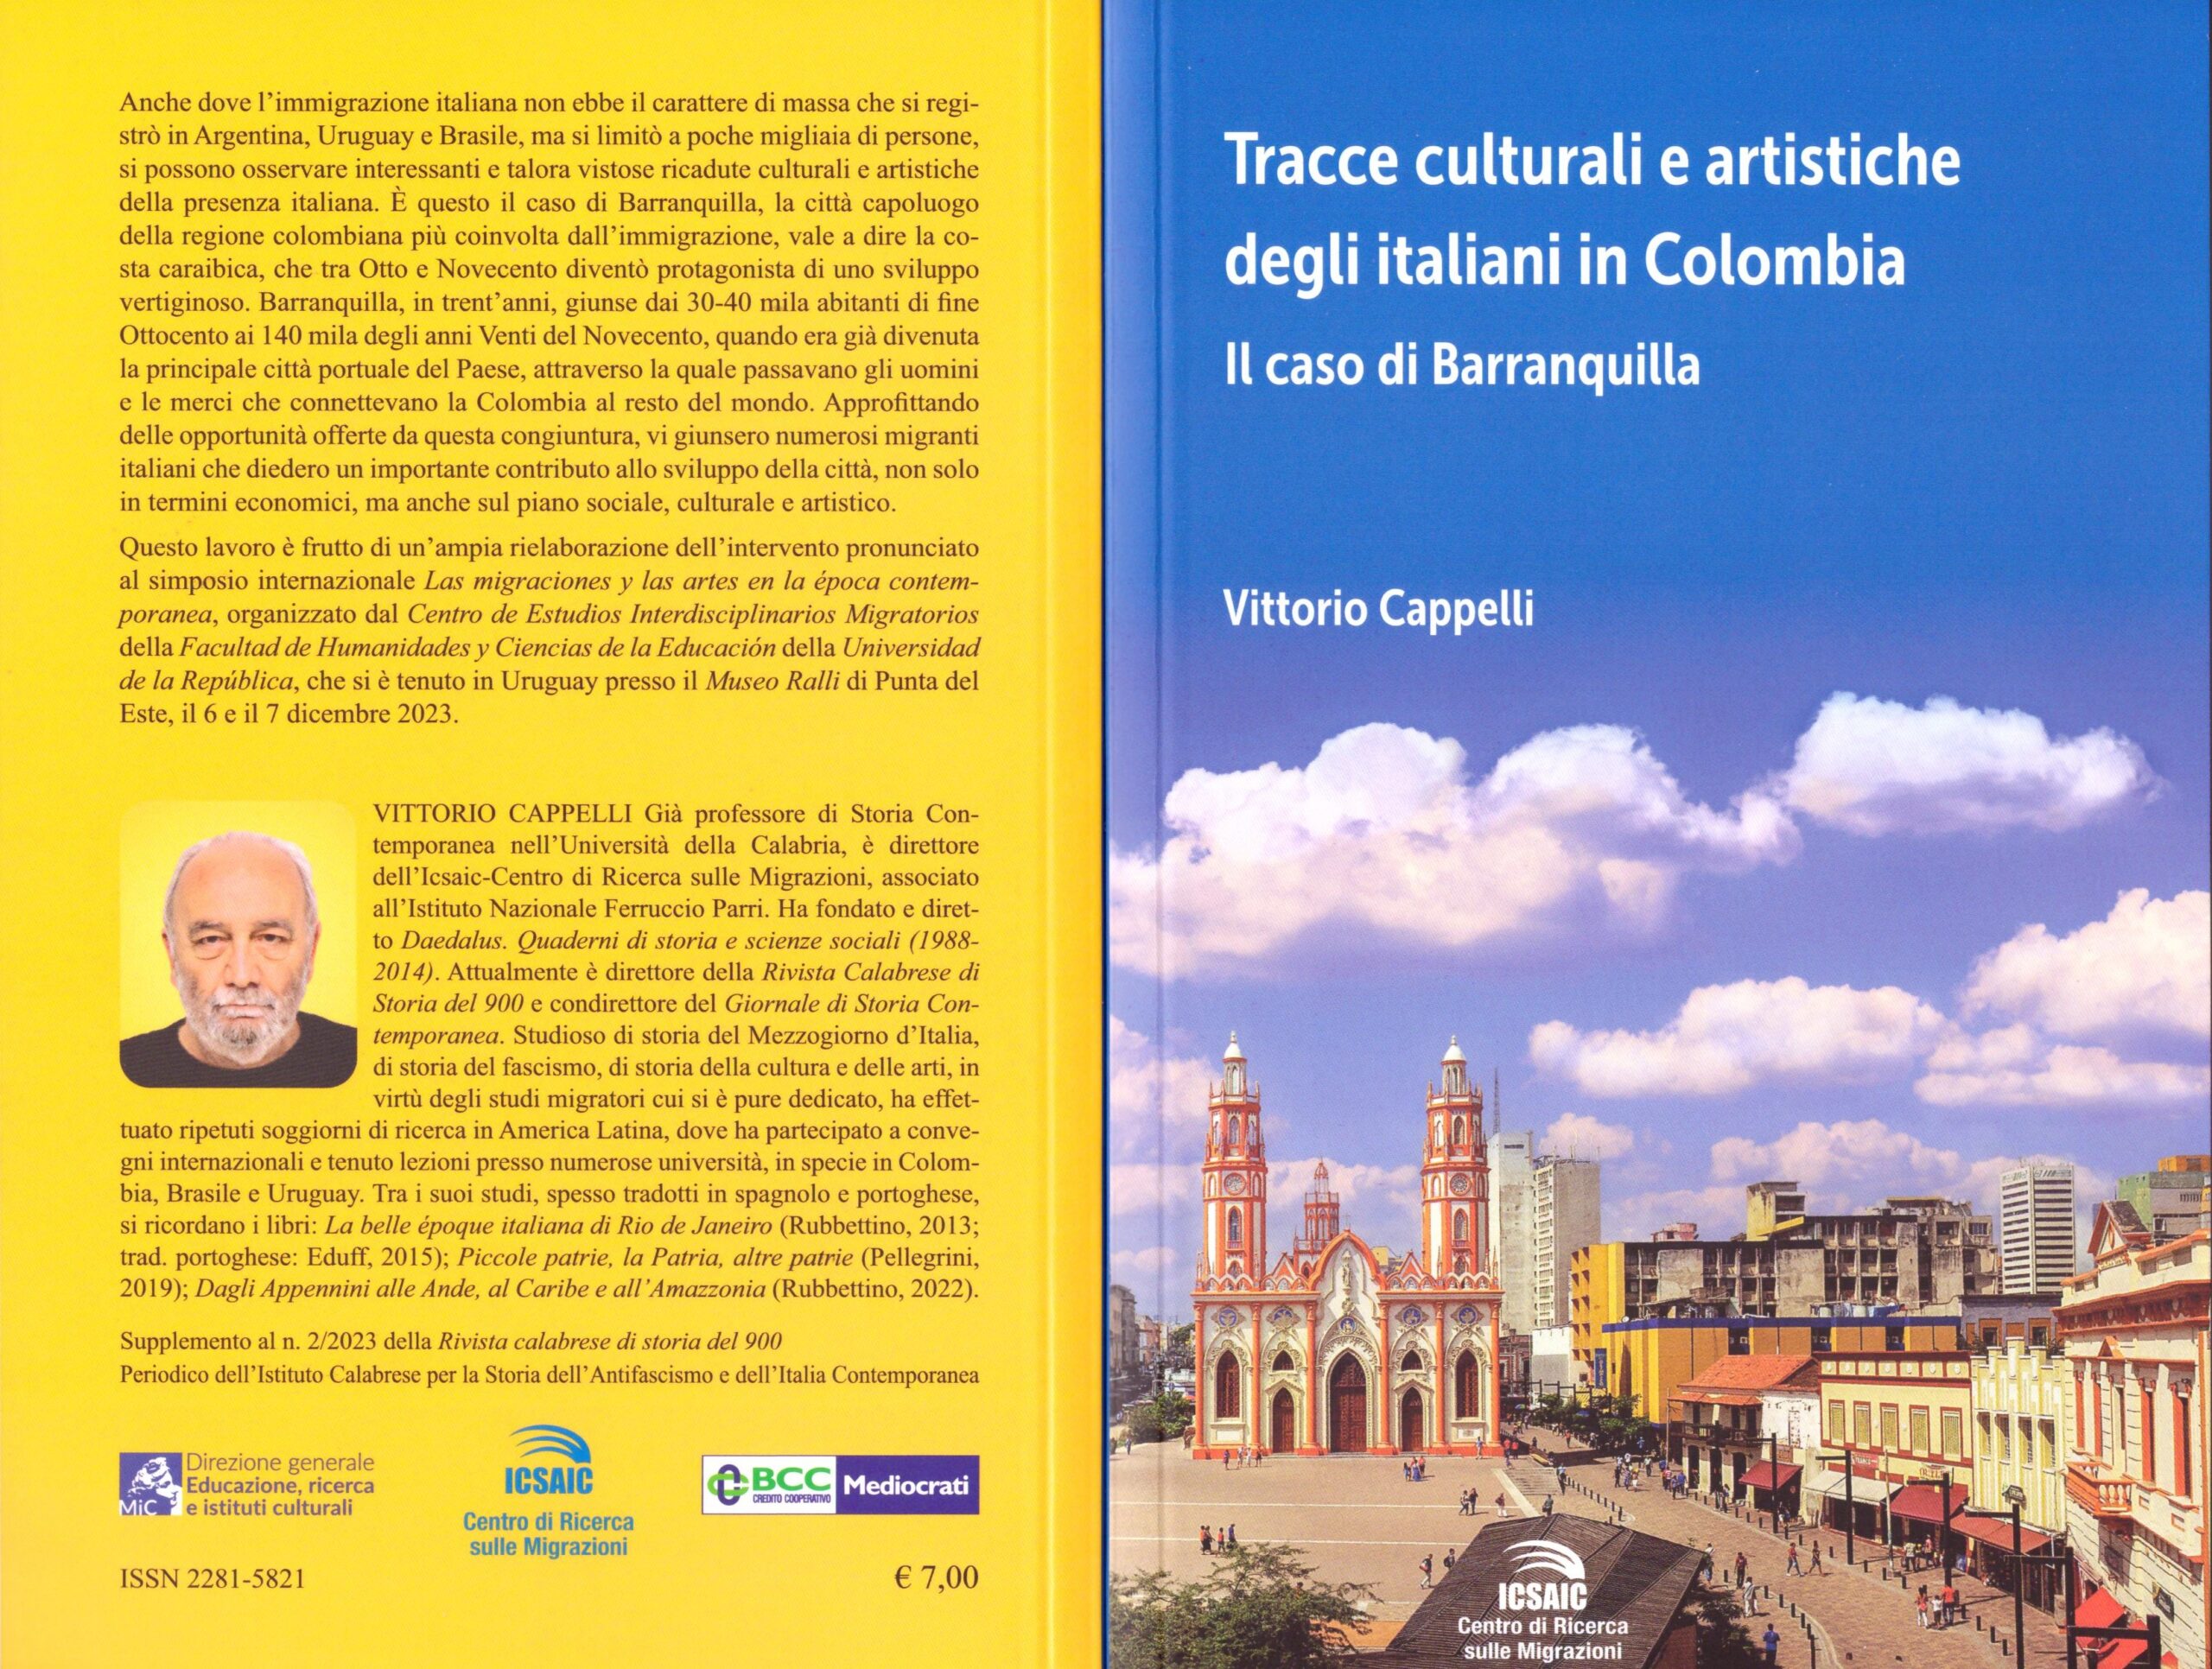 Emigrazione italiana in Colombia. Pubblicato il volume sul caso Barranquilla, di Vittorio Cappelli per il Centro Ricerca migrazioni dell’ICSAIC